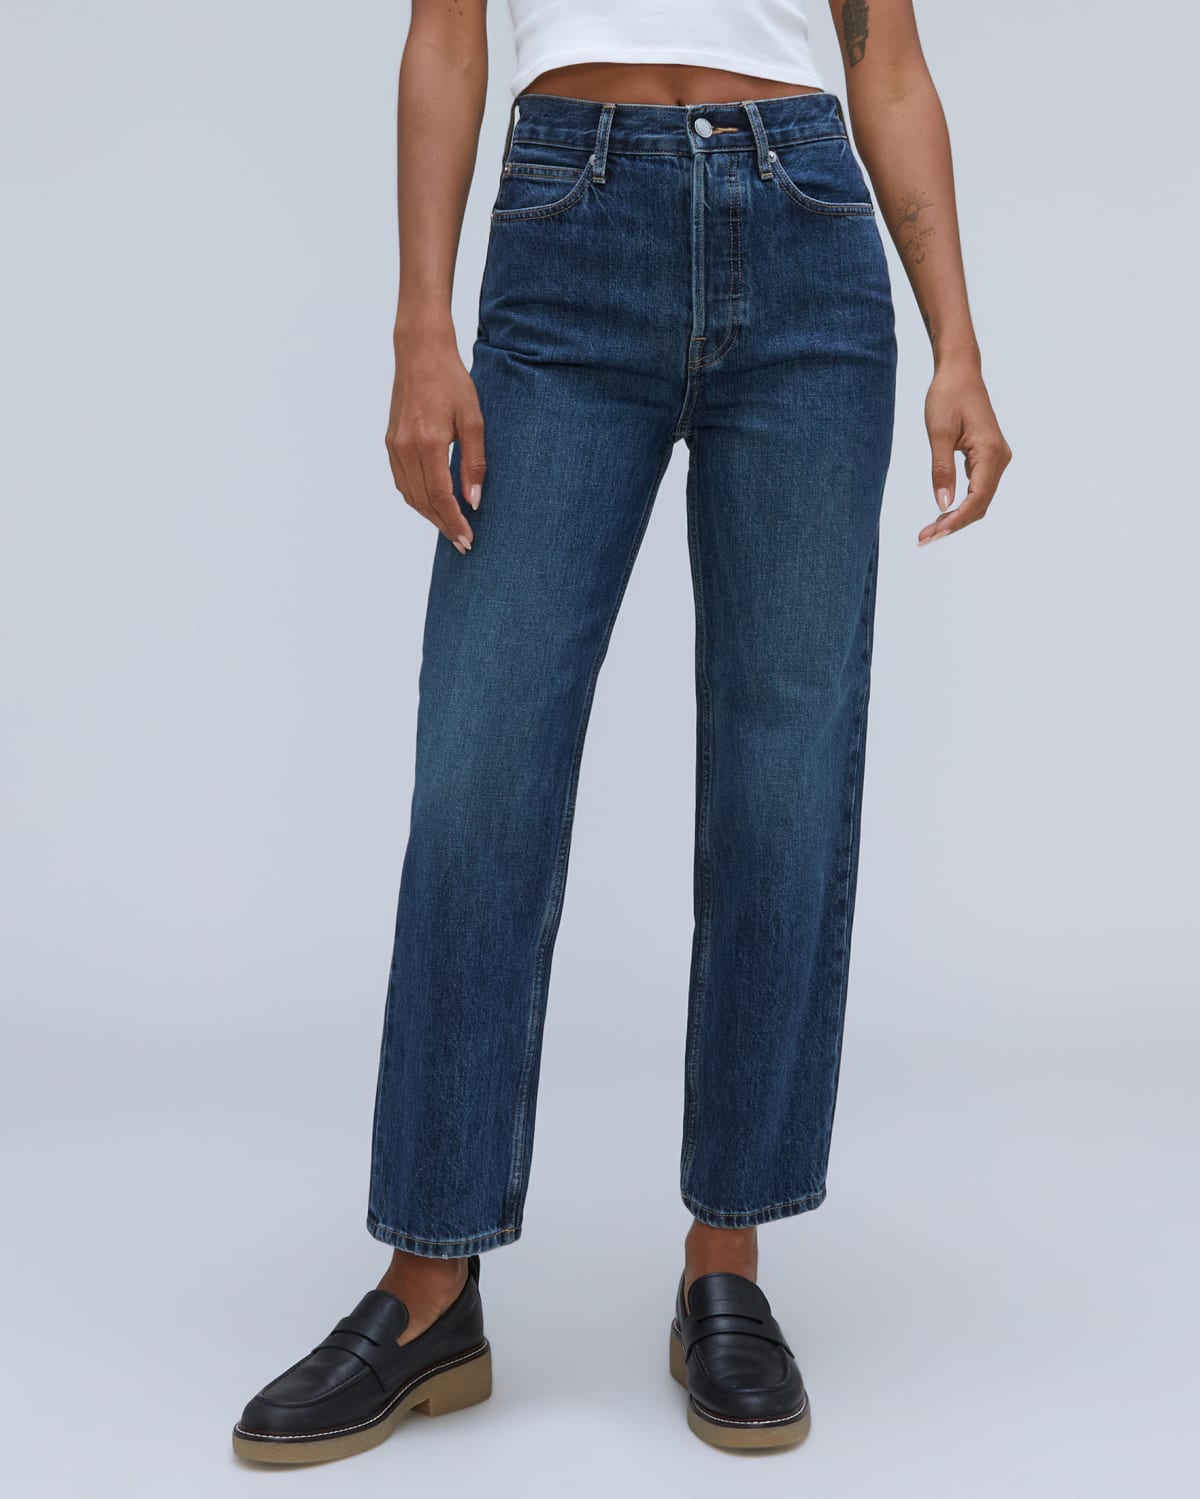 Women's Jeans –